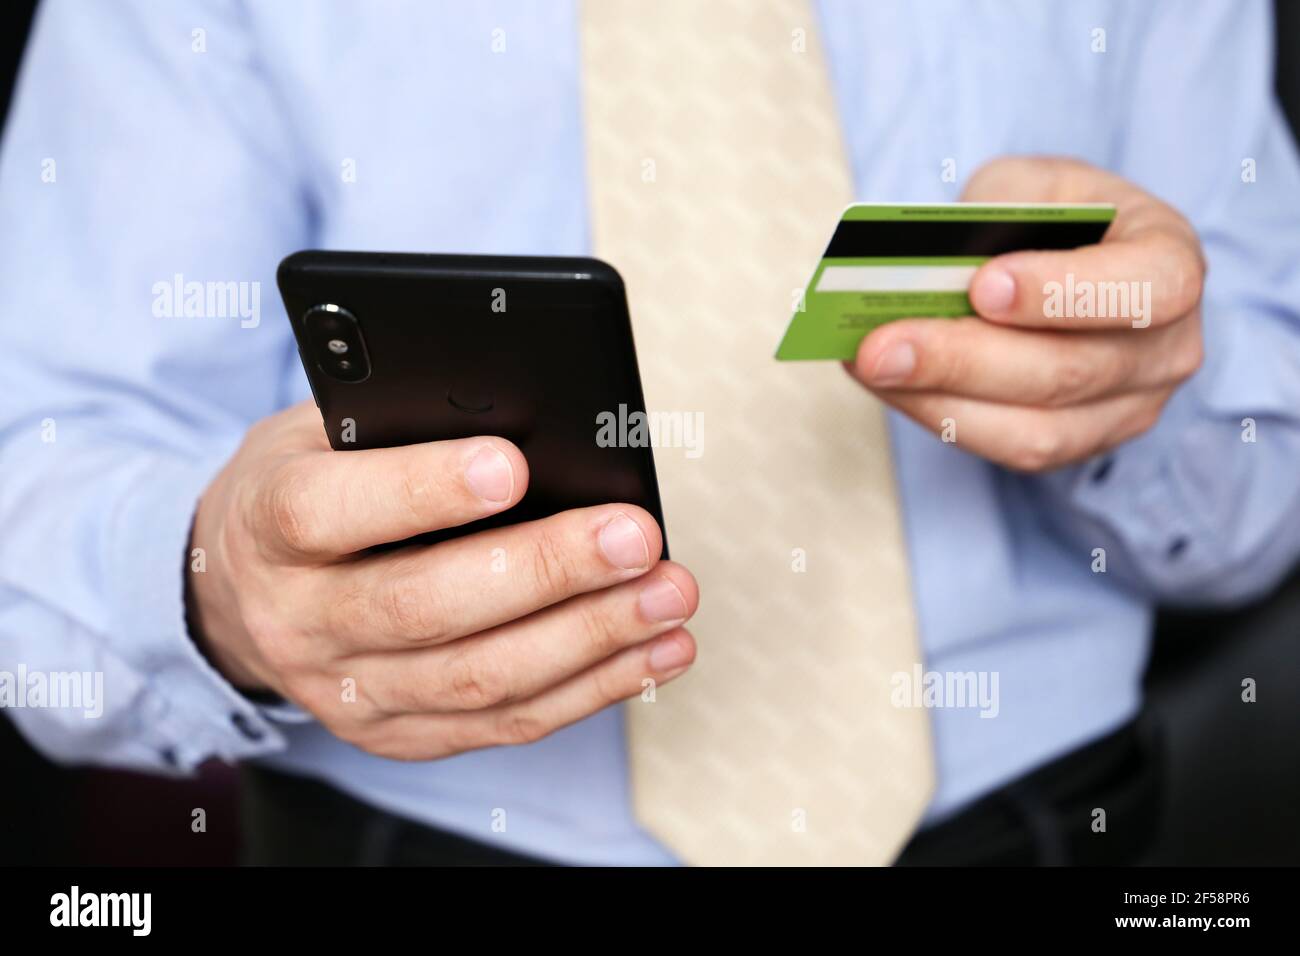 Homme dans les vêtements de bureau tenant la carte de crédit et le smartphone entre les mains. Concept d'achat et de paiement en ligne, de transaction financière Banque D'Images